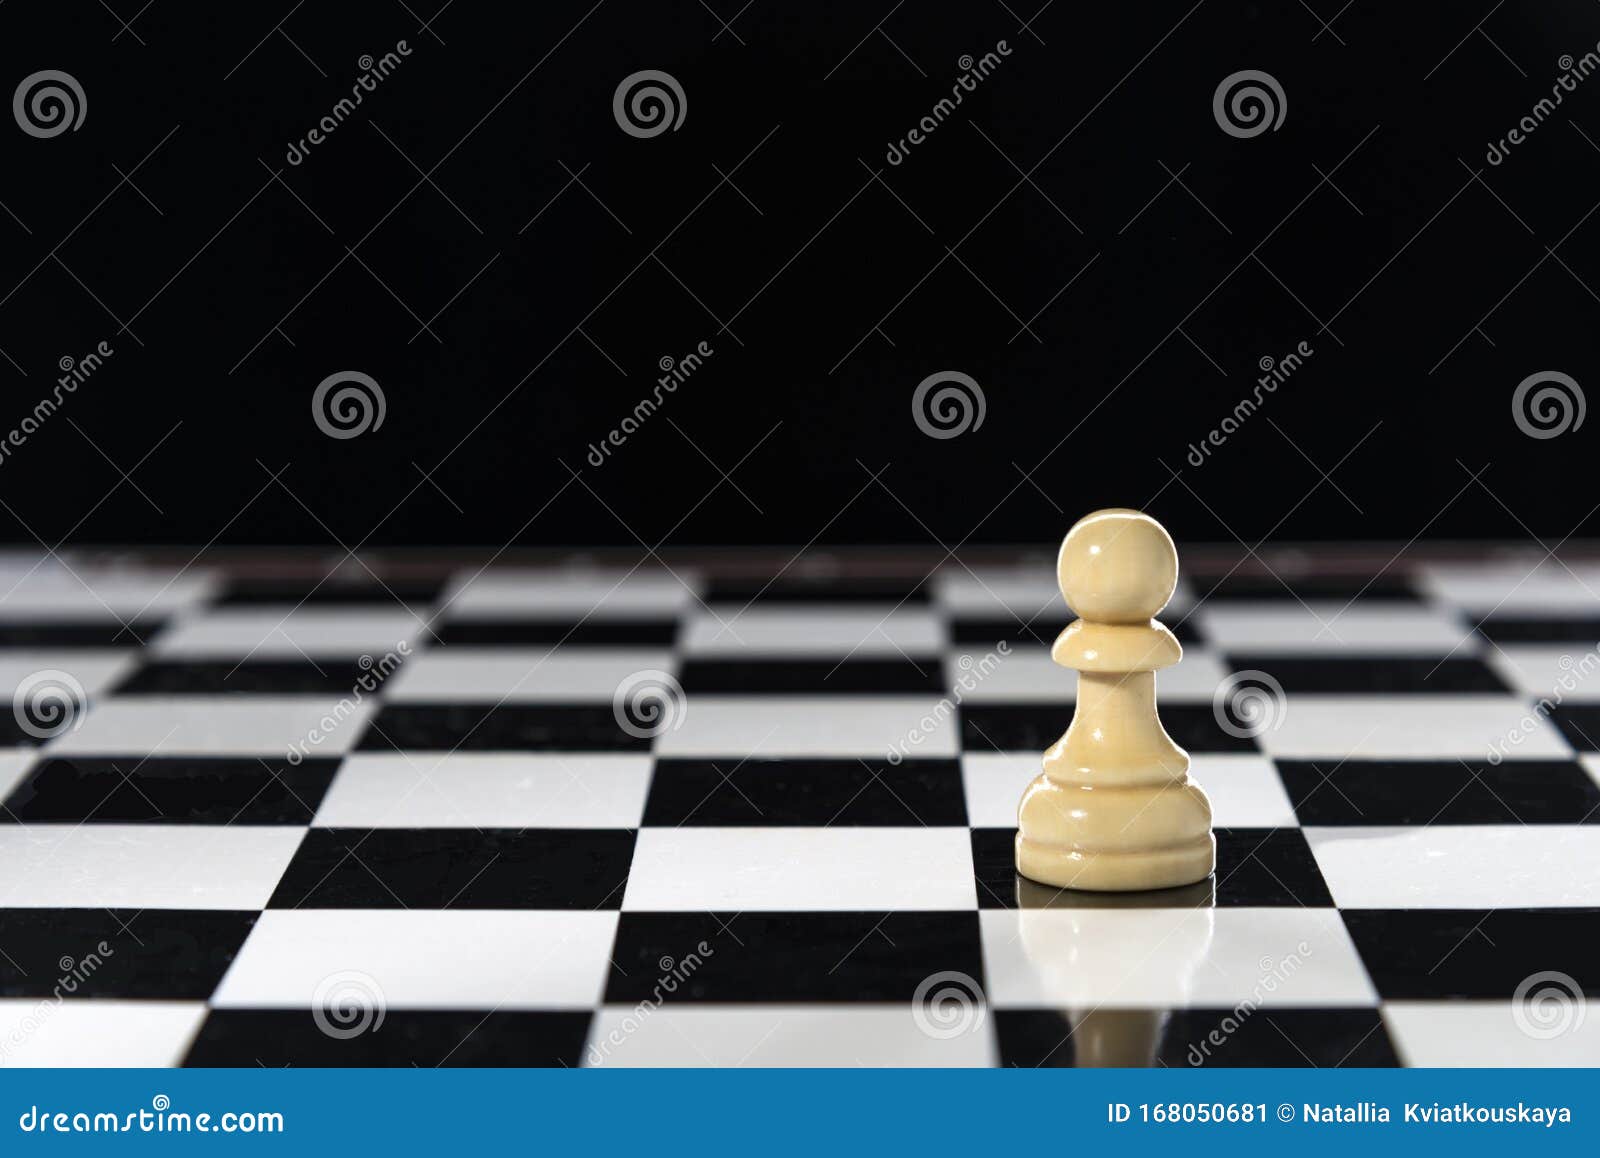 На шахматной доске осталось 5 белых фигур. Шахматы "пешка". Пешка на доске. Шахматная доска пешка к пешке. Белая пешка на черном фоне.